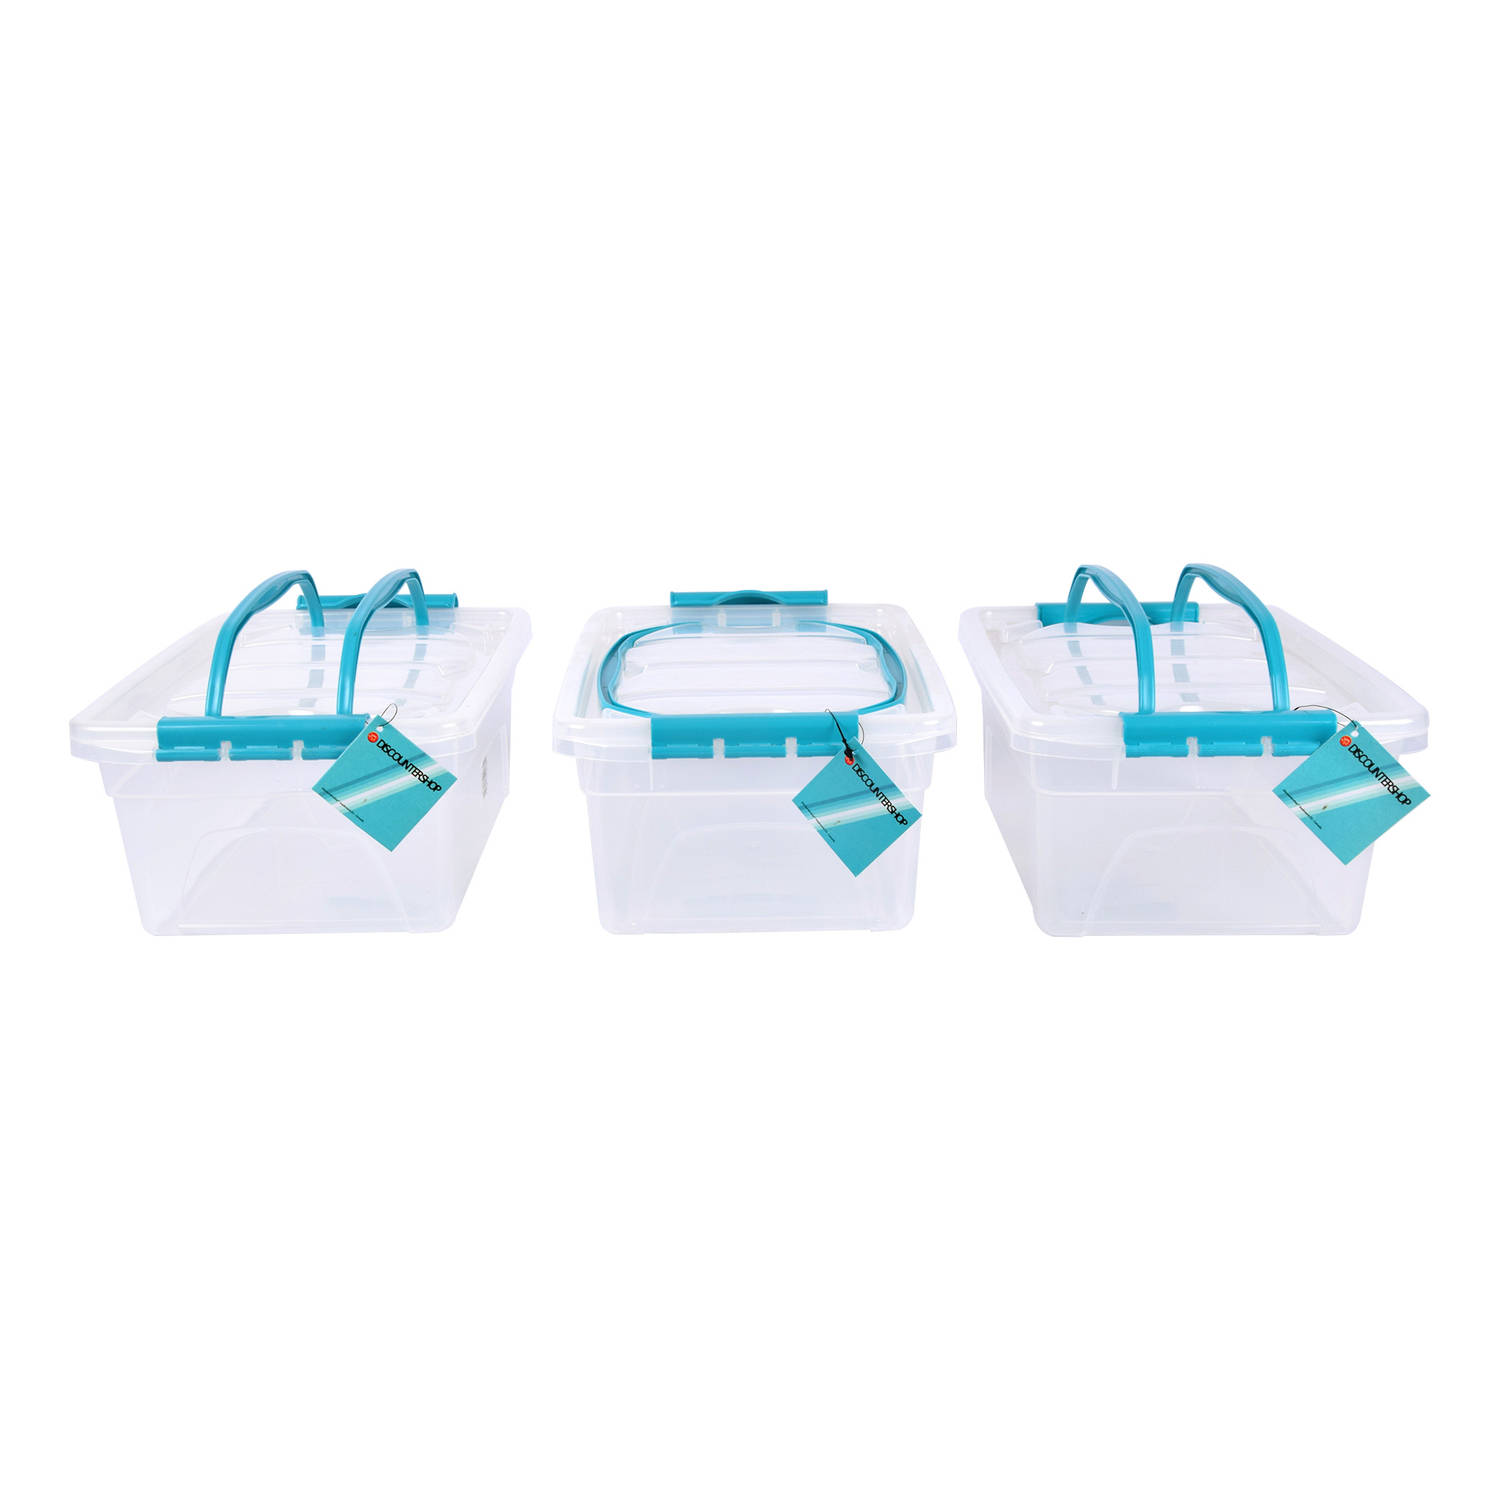 Set van 3 Opbergbox met Deksel Transparant 5 Liter - Kunststof met Sky Blauw Handvat - 30x20.5x12.5cm - Lichtgewicht - Opbergruimte Voor Diverse Huishoudelijke Spullen